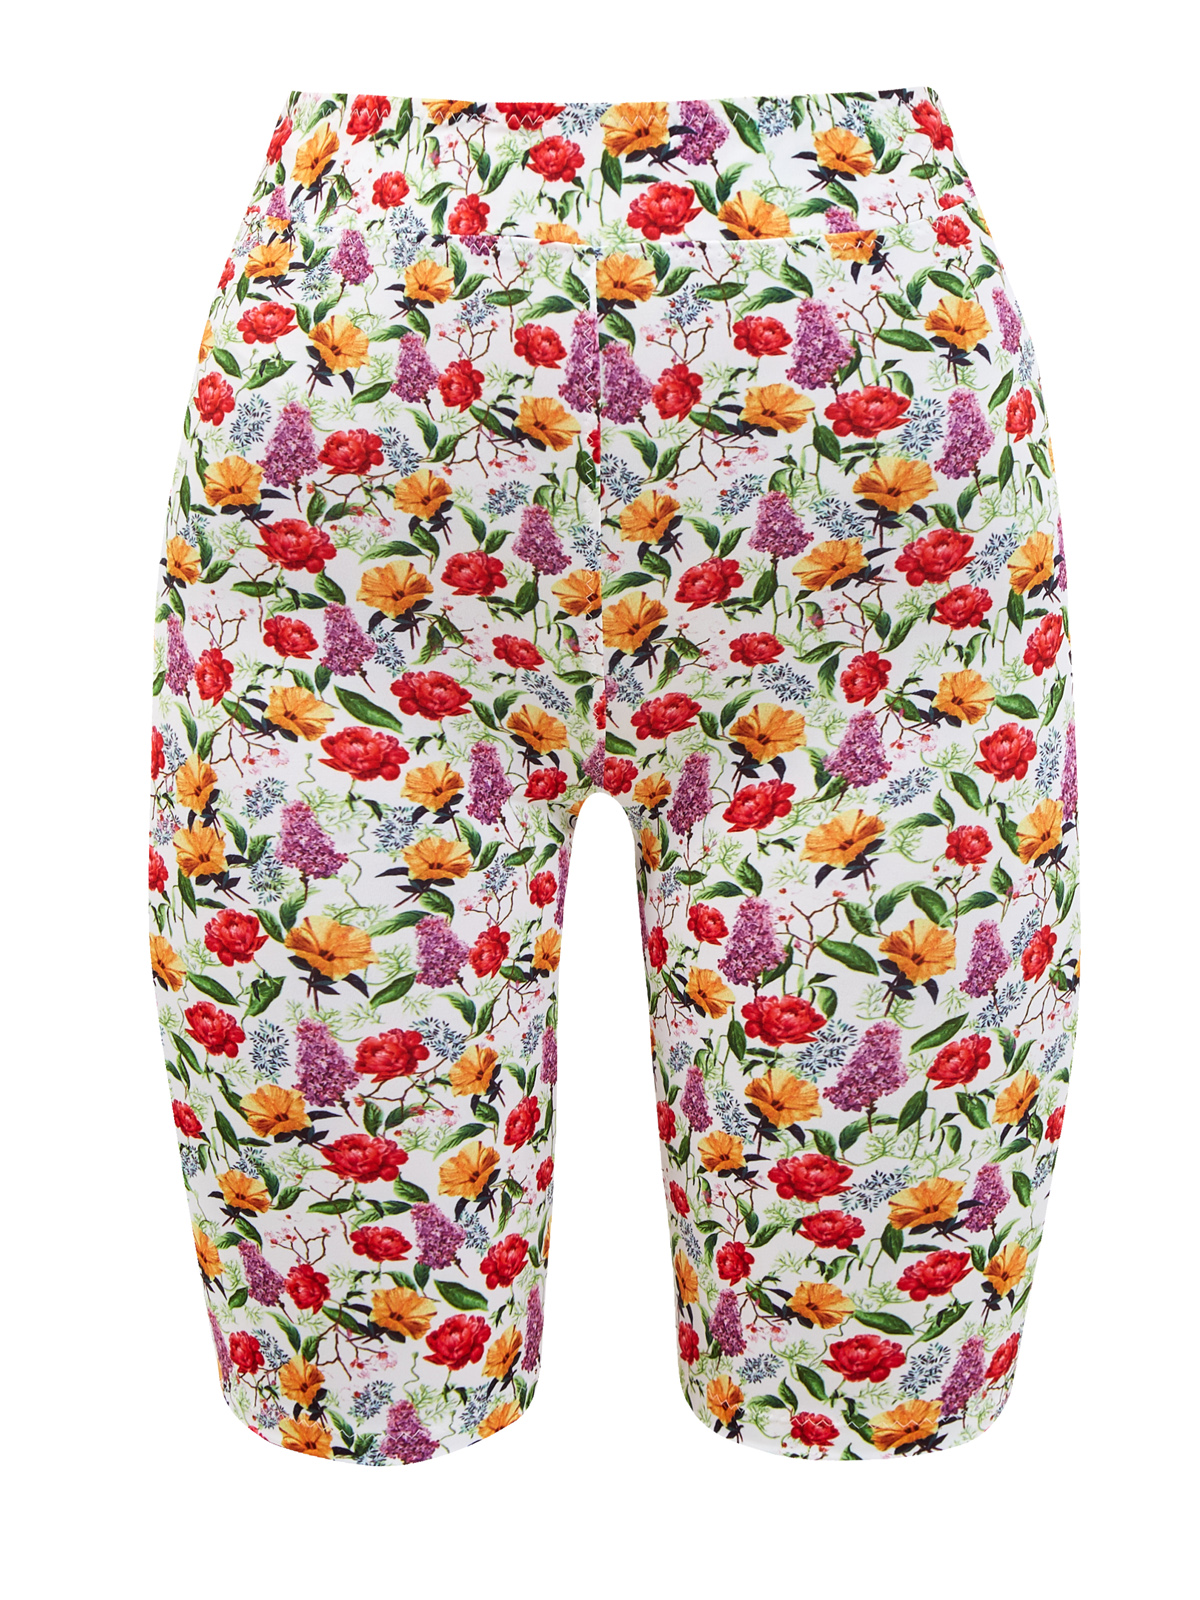 Эластичные шорты Noma с цветочным принтом Bonita CHARO RUIZ IBIZA, размер S;M;L